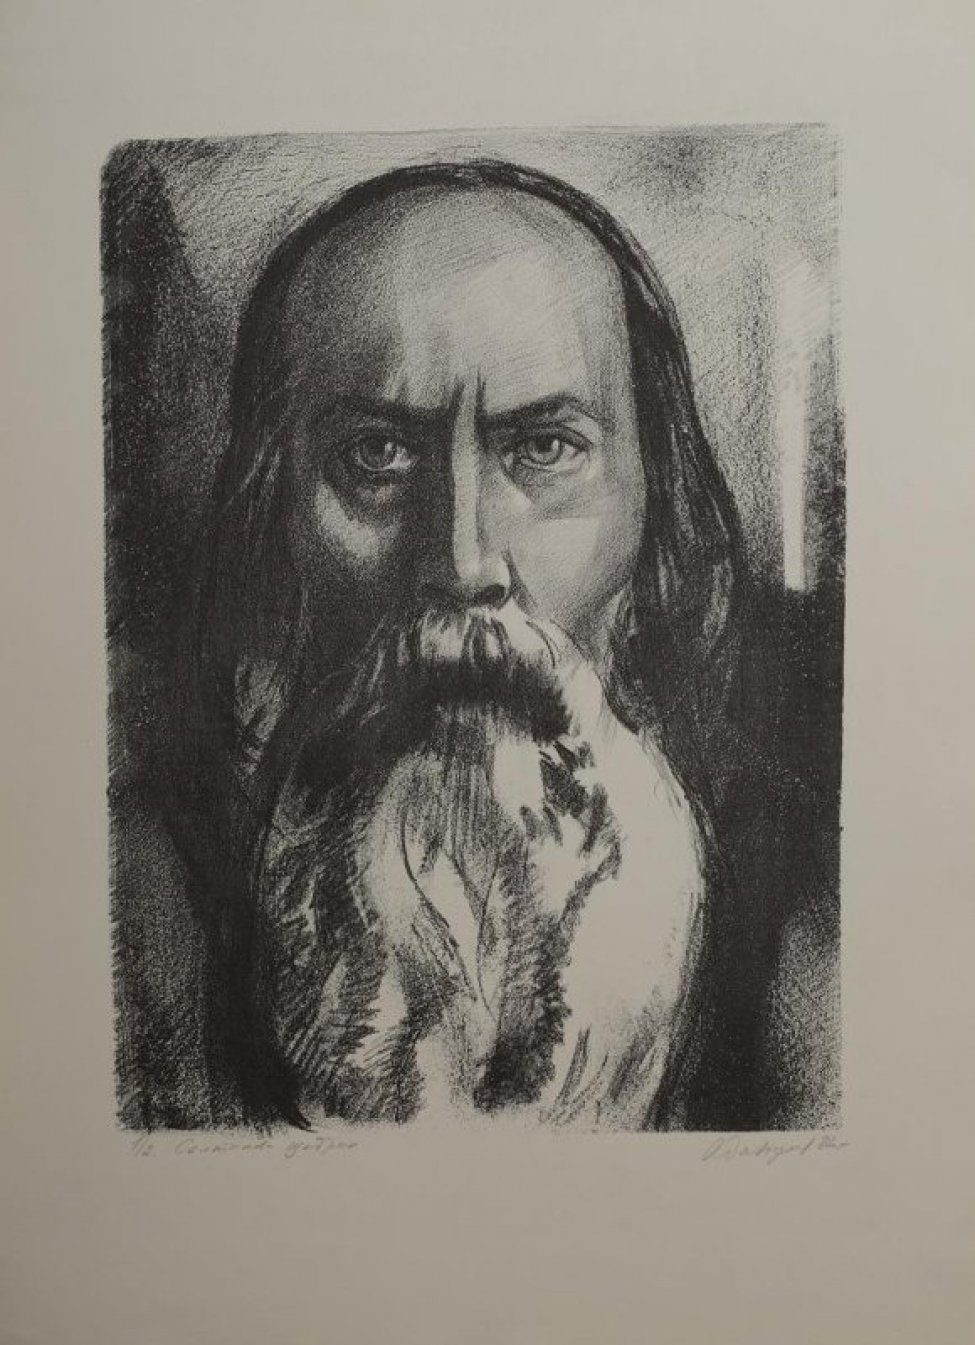 Погрудное изображение анфас писателя М.Е.Салтыкова-Щедрина с гладкими прямыми волосами до плеч и длинной густой бородой.